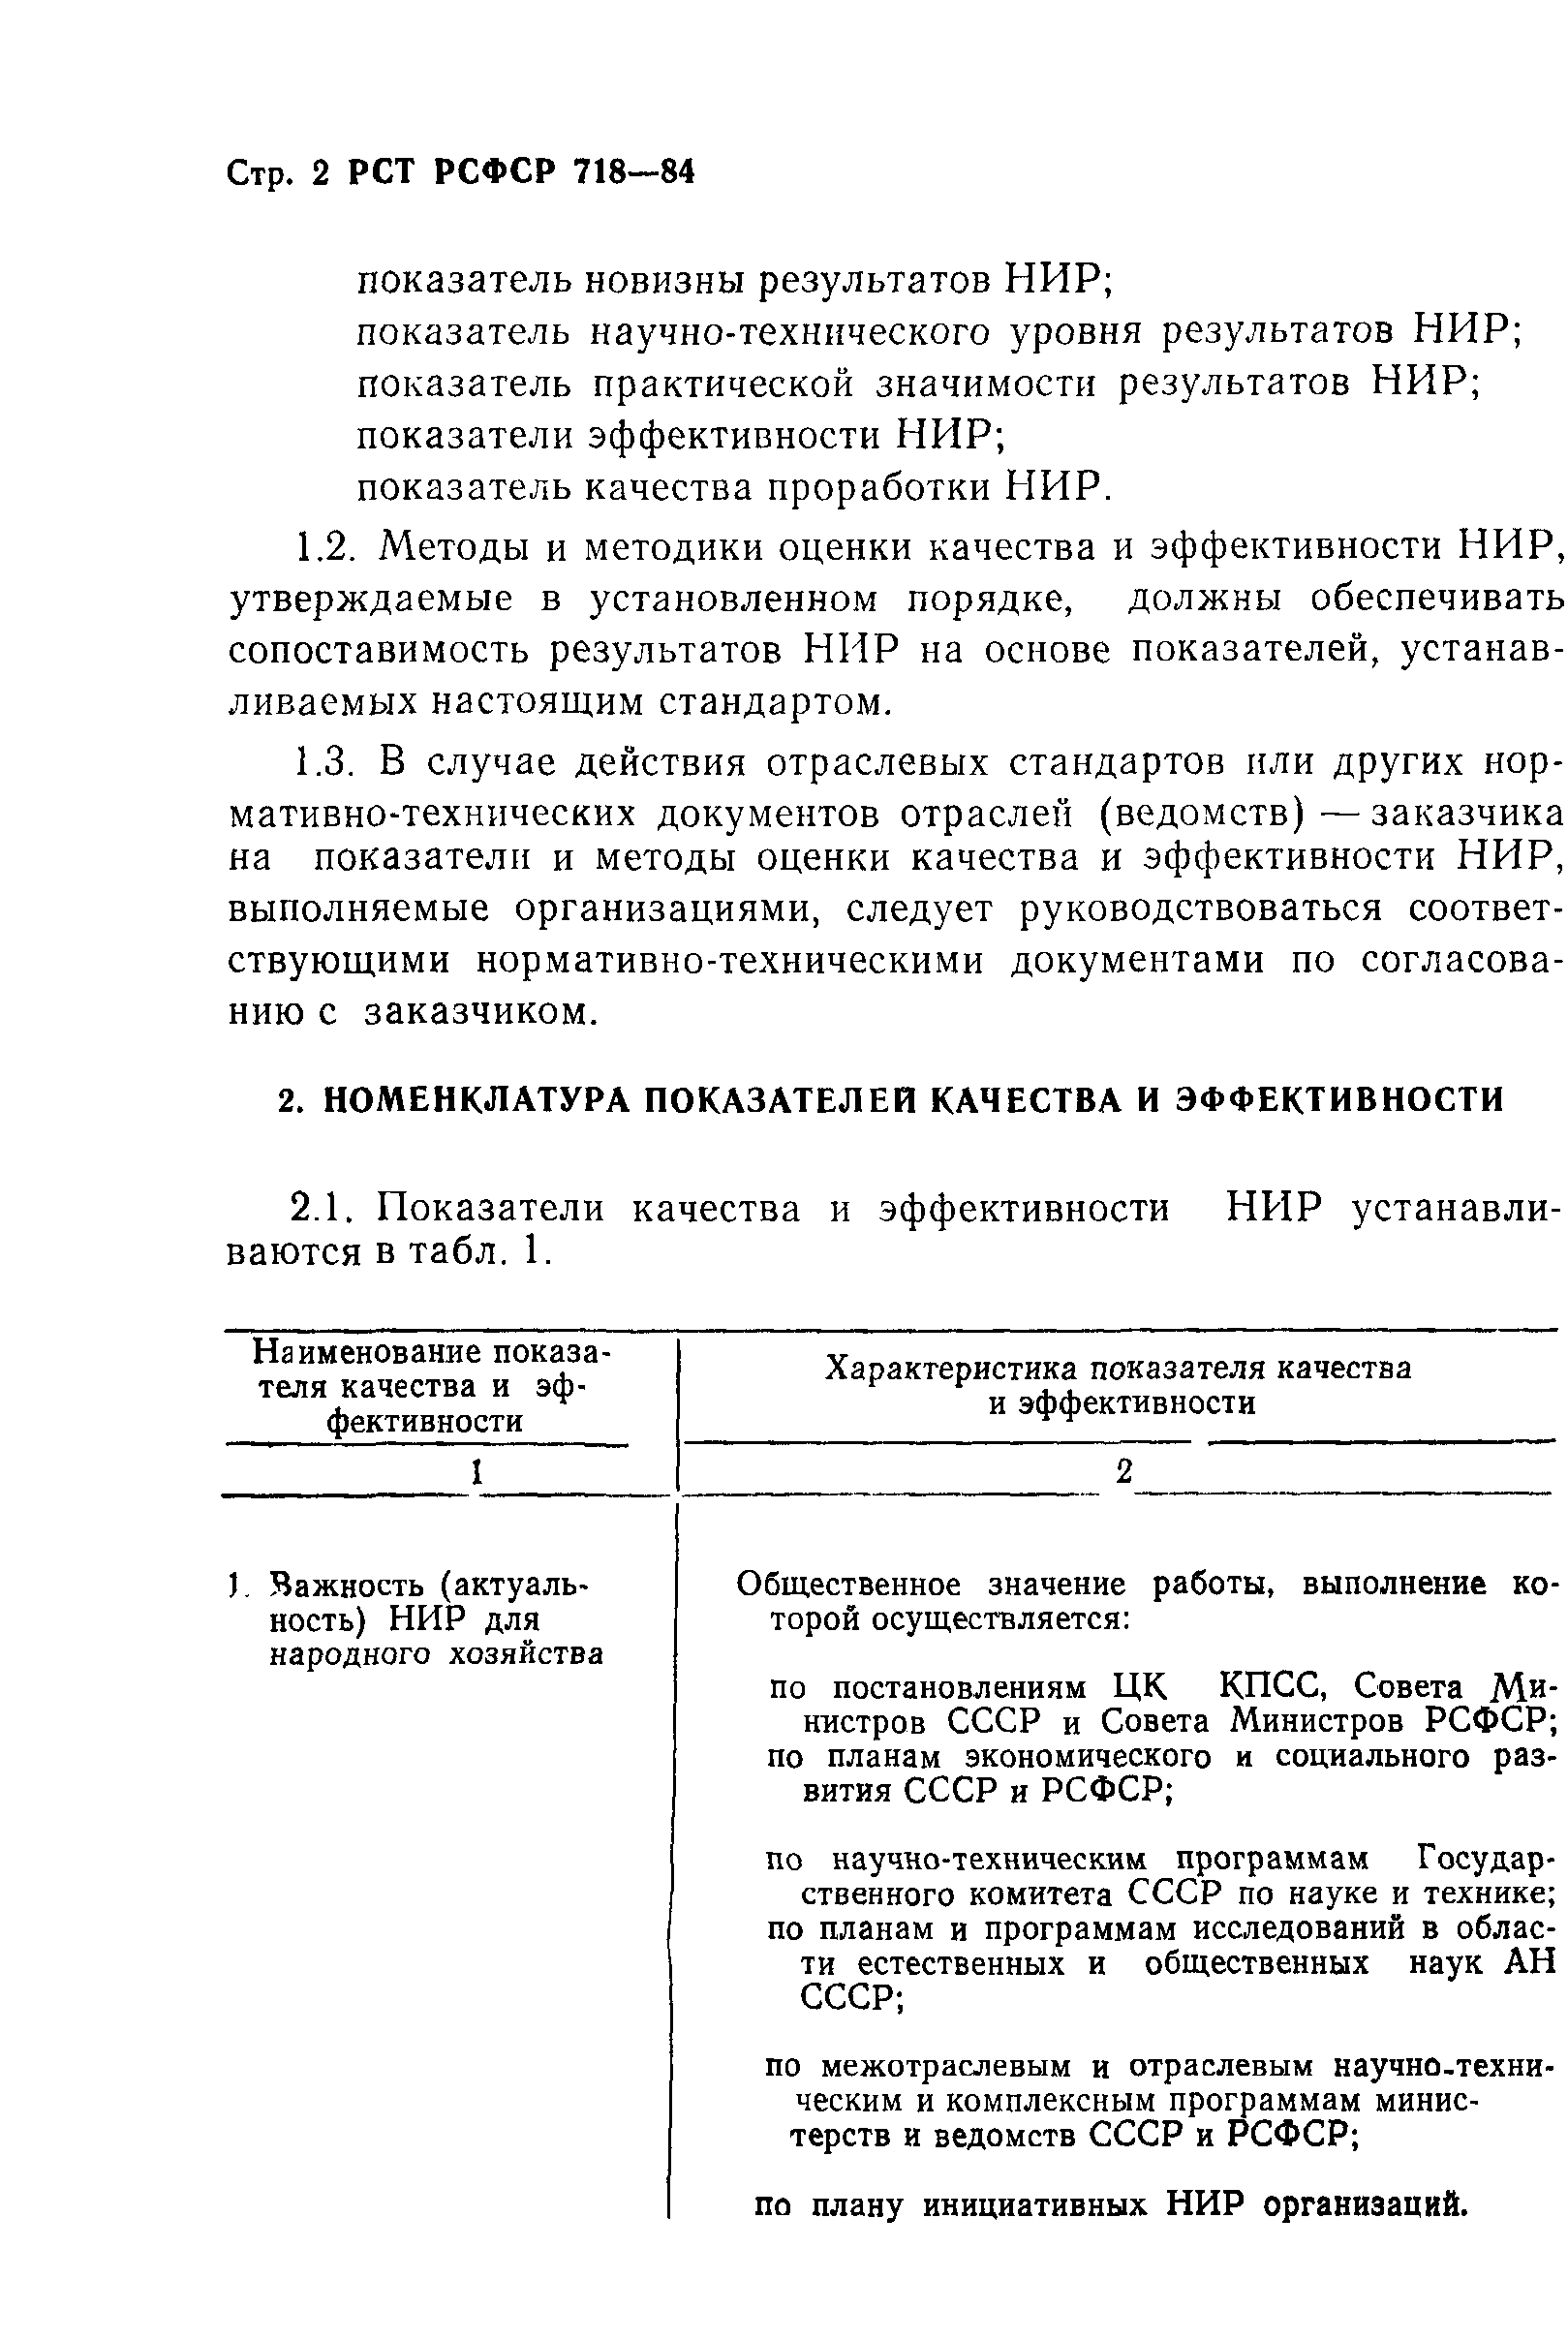 РСТ РСФСР 718-84